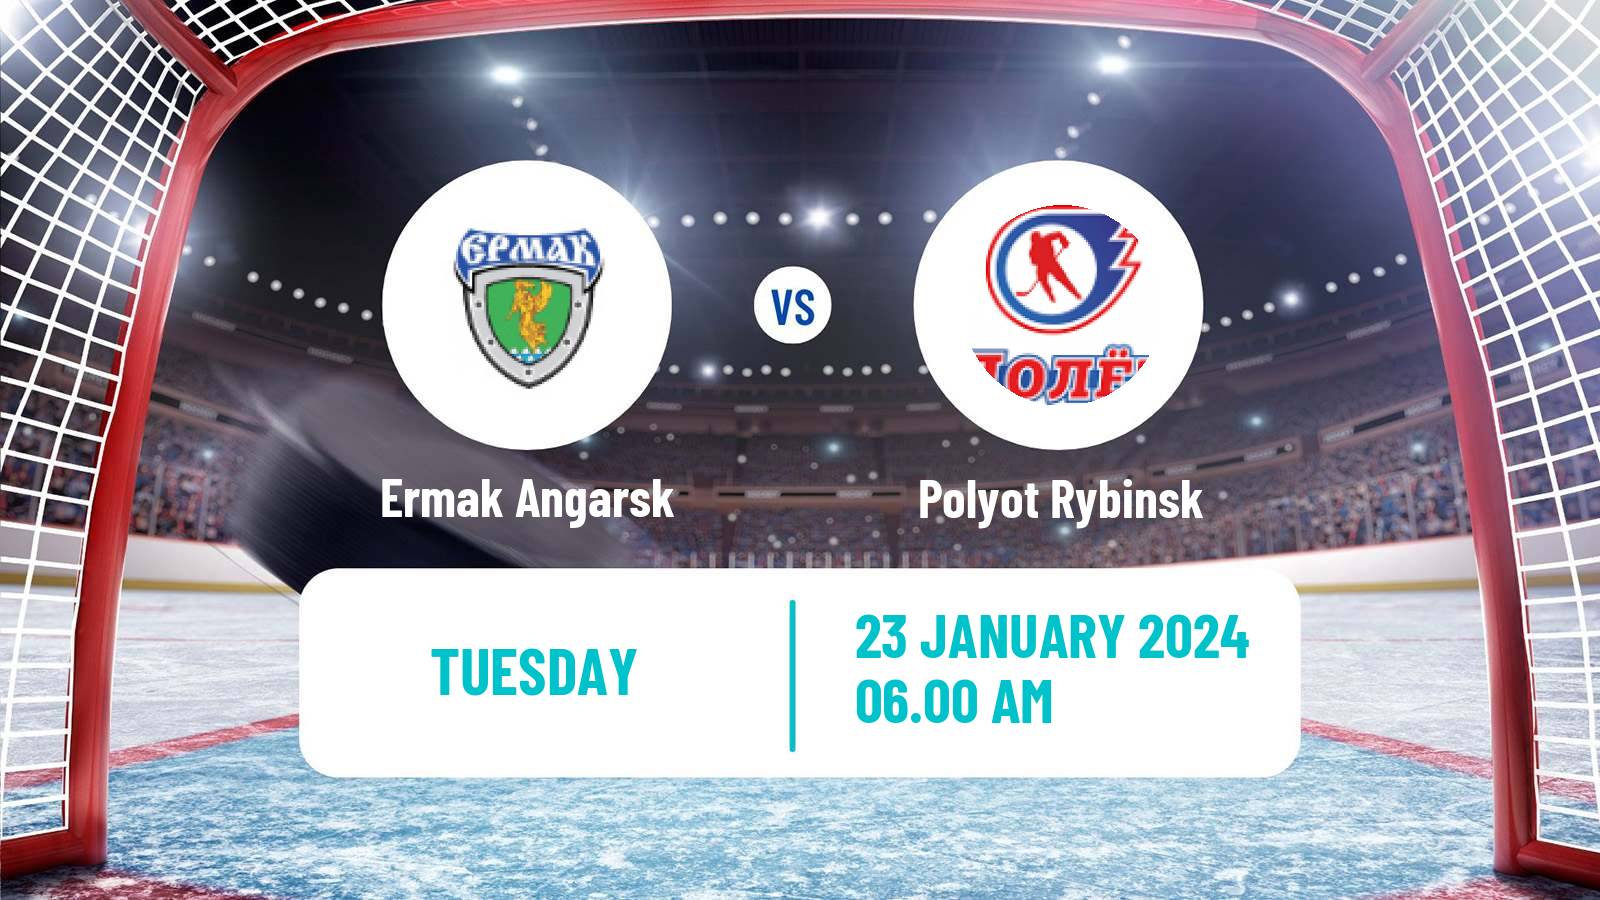 Hockey NMHL Ermak Angarsk - Polyot Rybinsk